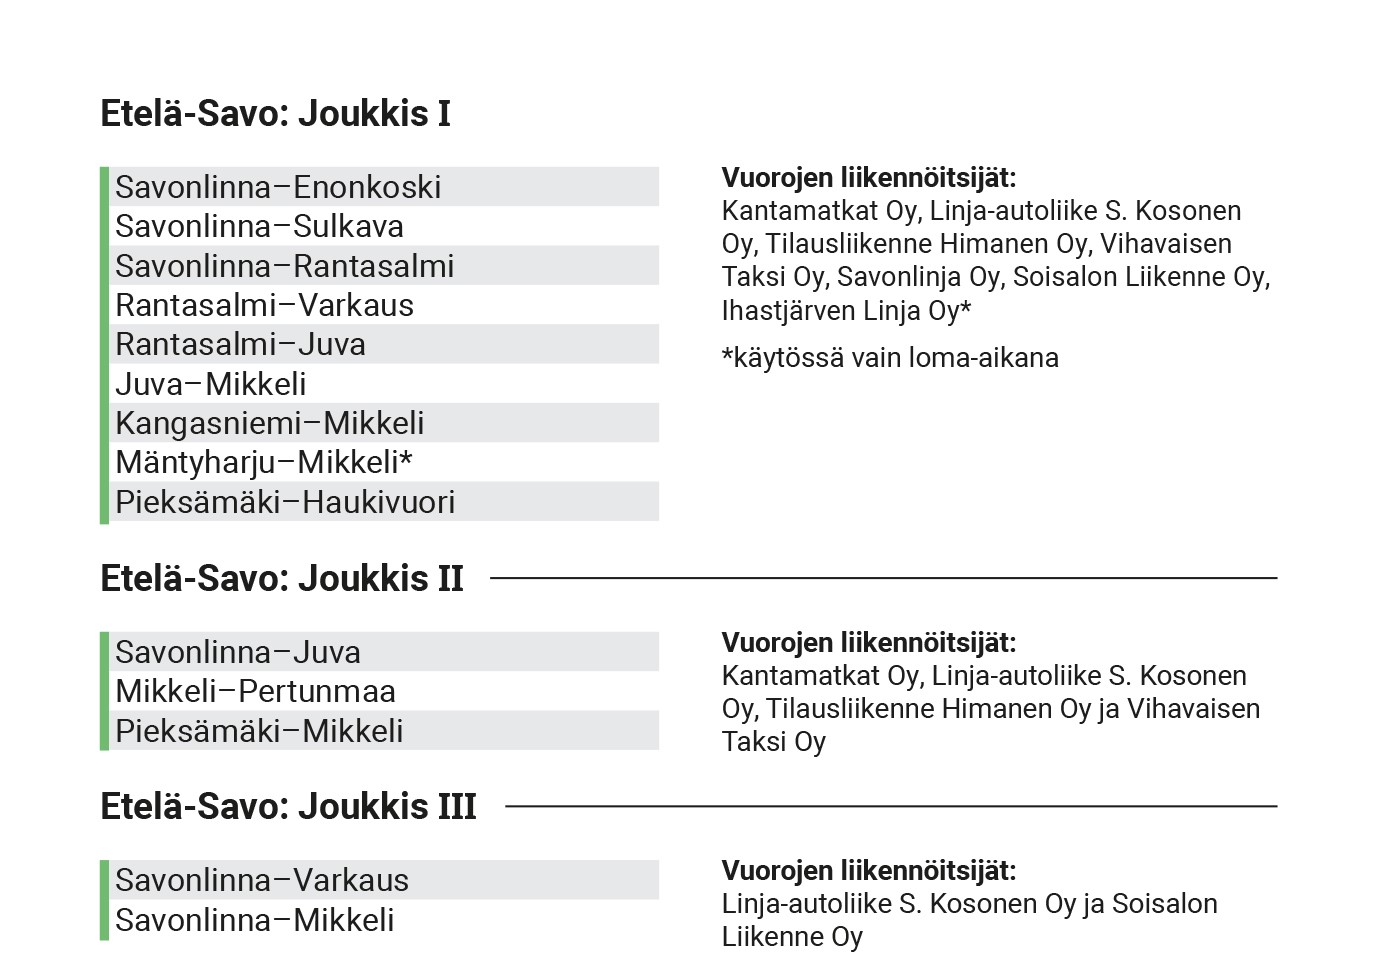 Kuva: Joukkis 1 Etelä-Savo -liput kelpaavat Kantamatkojen, Linja-autoliike S. Kososen, Tilausliikenne Himasen, Vihavaisen Taksin, Savonlinjan, Soisalon Liikenteen ja Ihastjärven Linjan vuoroissa yhteysväleillä Savonlinna-Enonkoski, Savonlinna-Sulkava, Savonlinna-Rantasalmi, Rantasalmi-Varkaus, Rantasalmi-Juva, Juva-Mikkeli, Kangasniemi-Mikkeli, Mäntyharju-Mikkeli (loma-aikoina) sekä Pieksämäki-Haukivuori.  Joukkis 2 Etelä-Savo -liput kelpaavat Kantamatkojen, Linja-autoliike S. Kososen, Tilausliikenne Himasen ja Vihavaisen Taksin vuoroissa yhteysväleillä Savonlinna-Juva, Mikkeli-Pertunmaa sekä Pieksämäki-Mikkeli.  Joukkis 3 Etelä-Savo -liput kelpaavat Linja-autoliike S. Kososen ja Soisalon Liikenteen vuoroissa yhteysväleillä Savonlinna-Varkaus ja Savonlinna-Mikkeli.